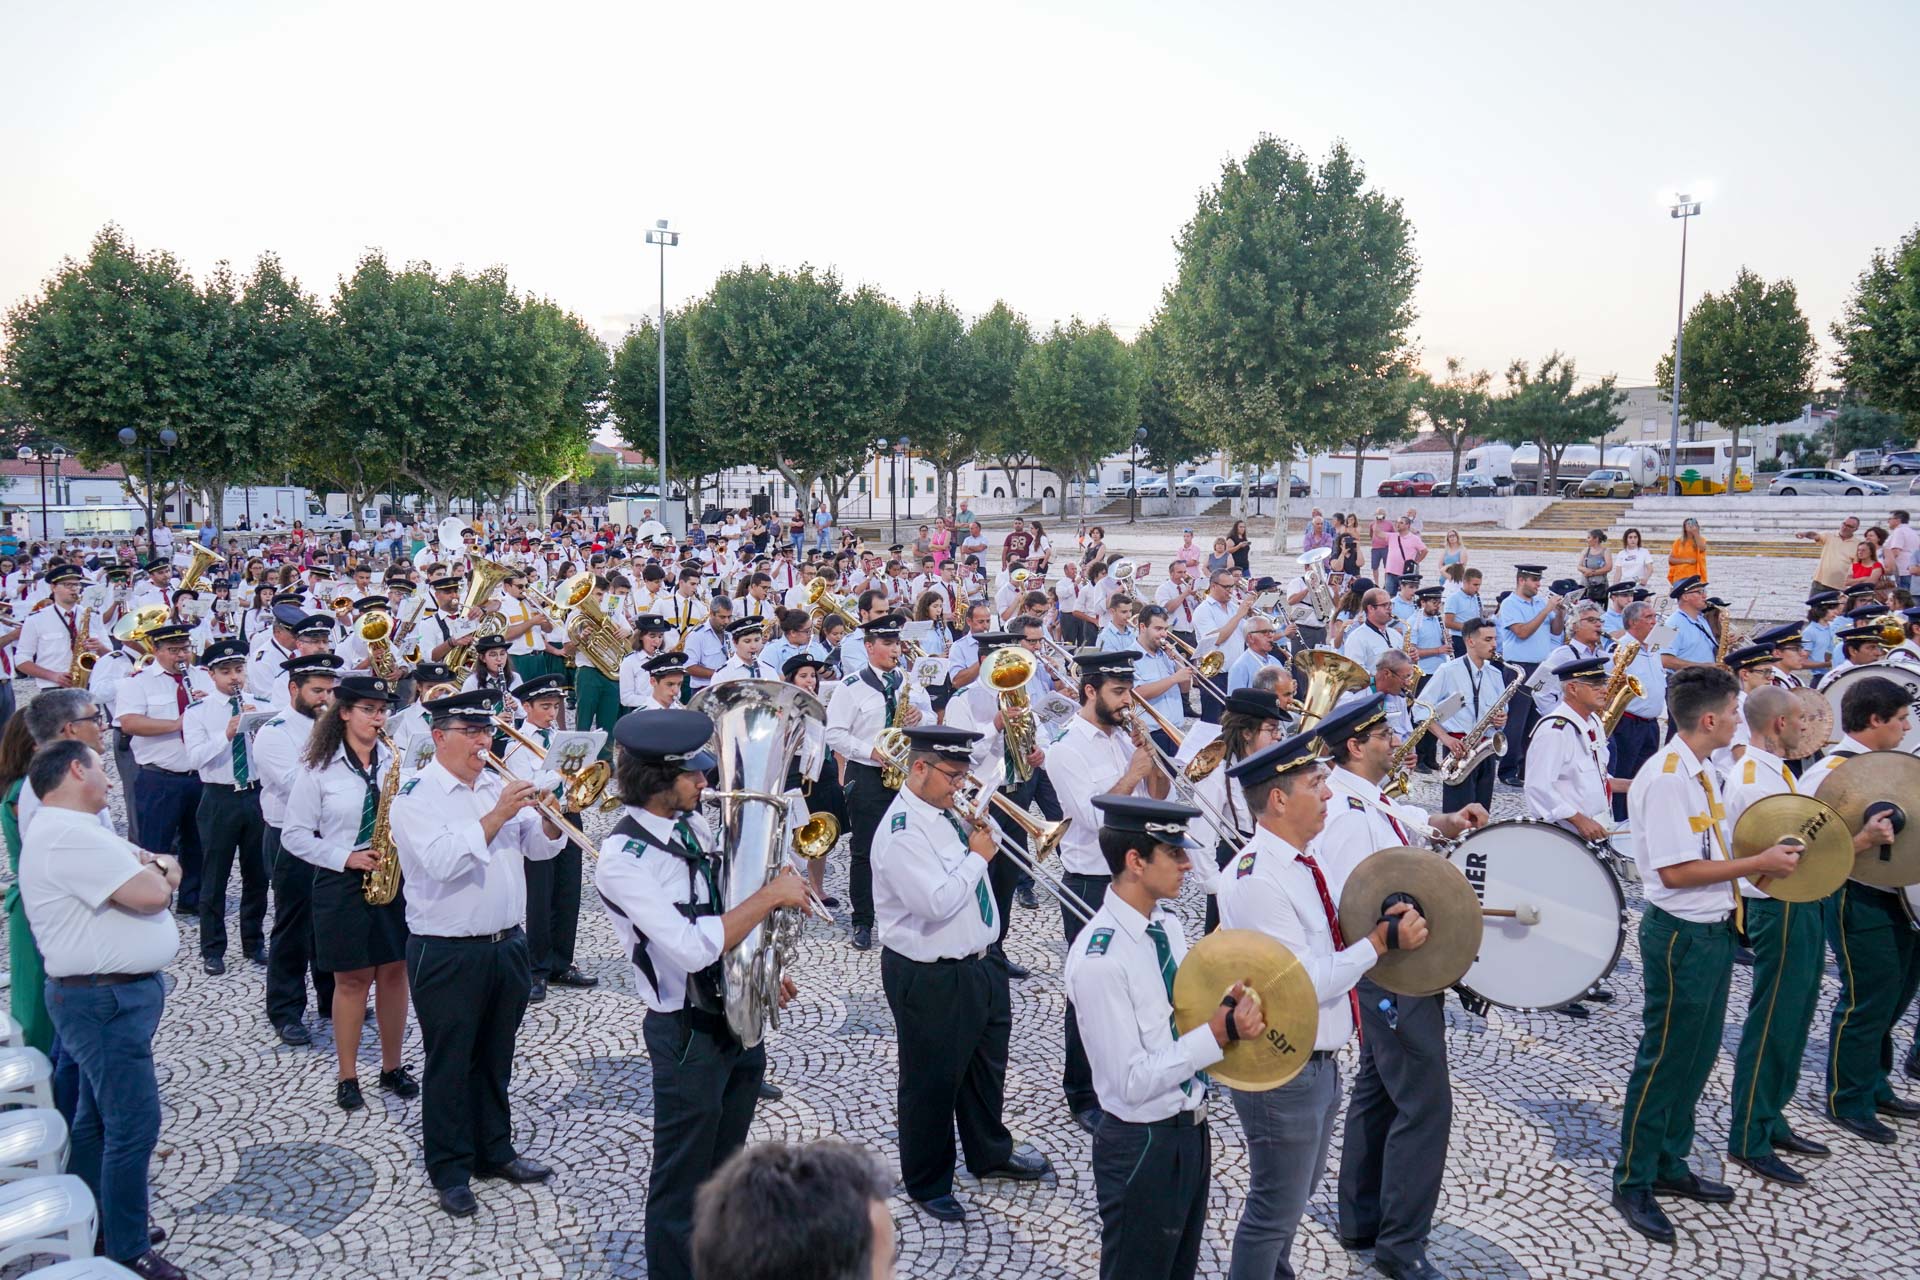 Festival de Bandas Filarmónicas do Alto Alentejo – Homenagem a Carlos Alberto Girão Ferreira